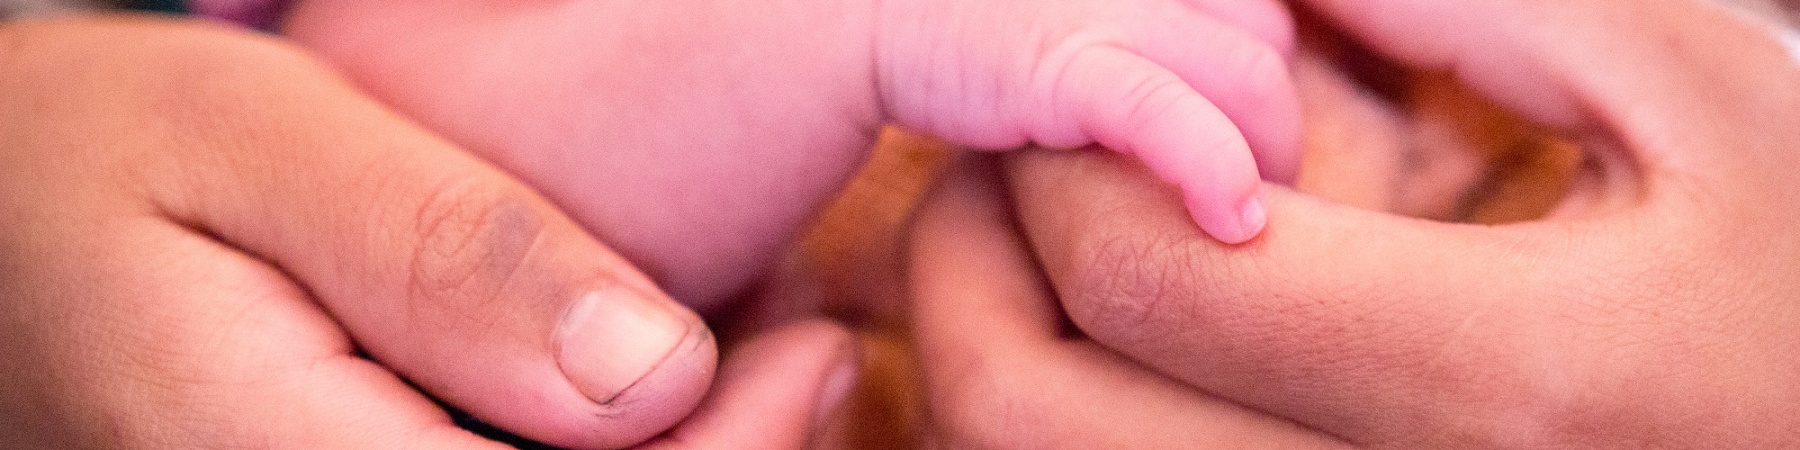 Mani di una mamma tengono la mano di suo figlio neonato